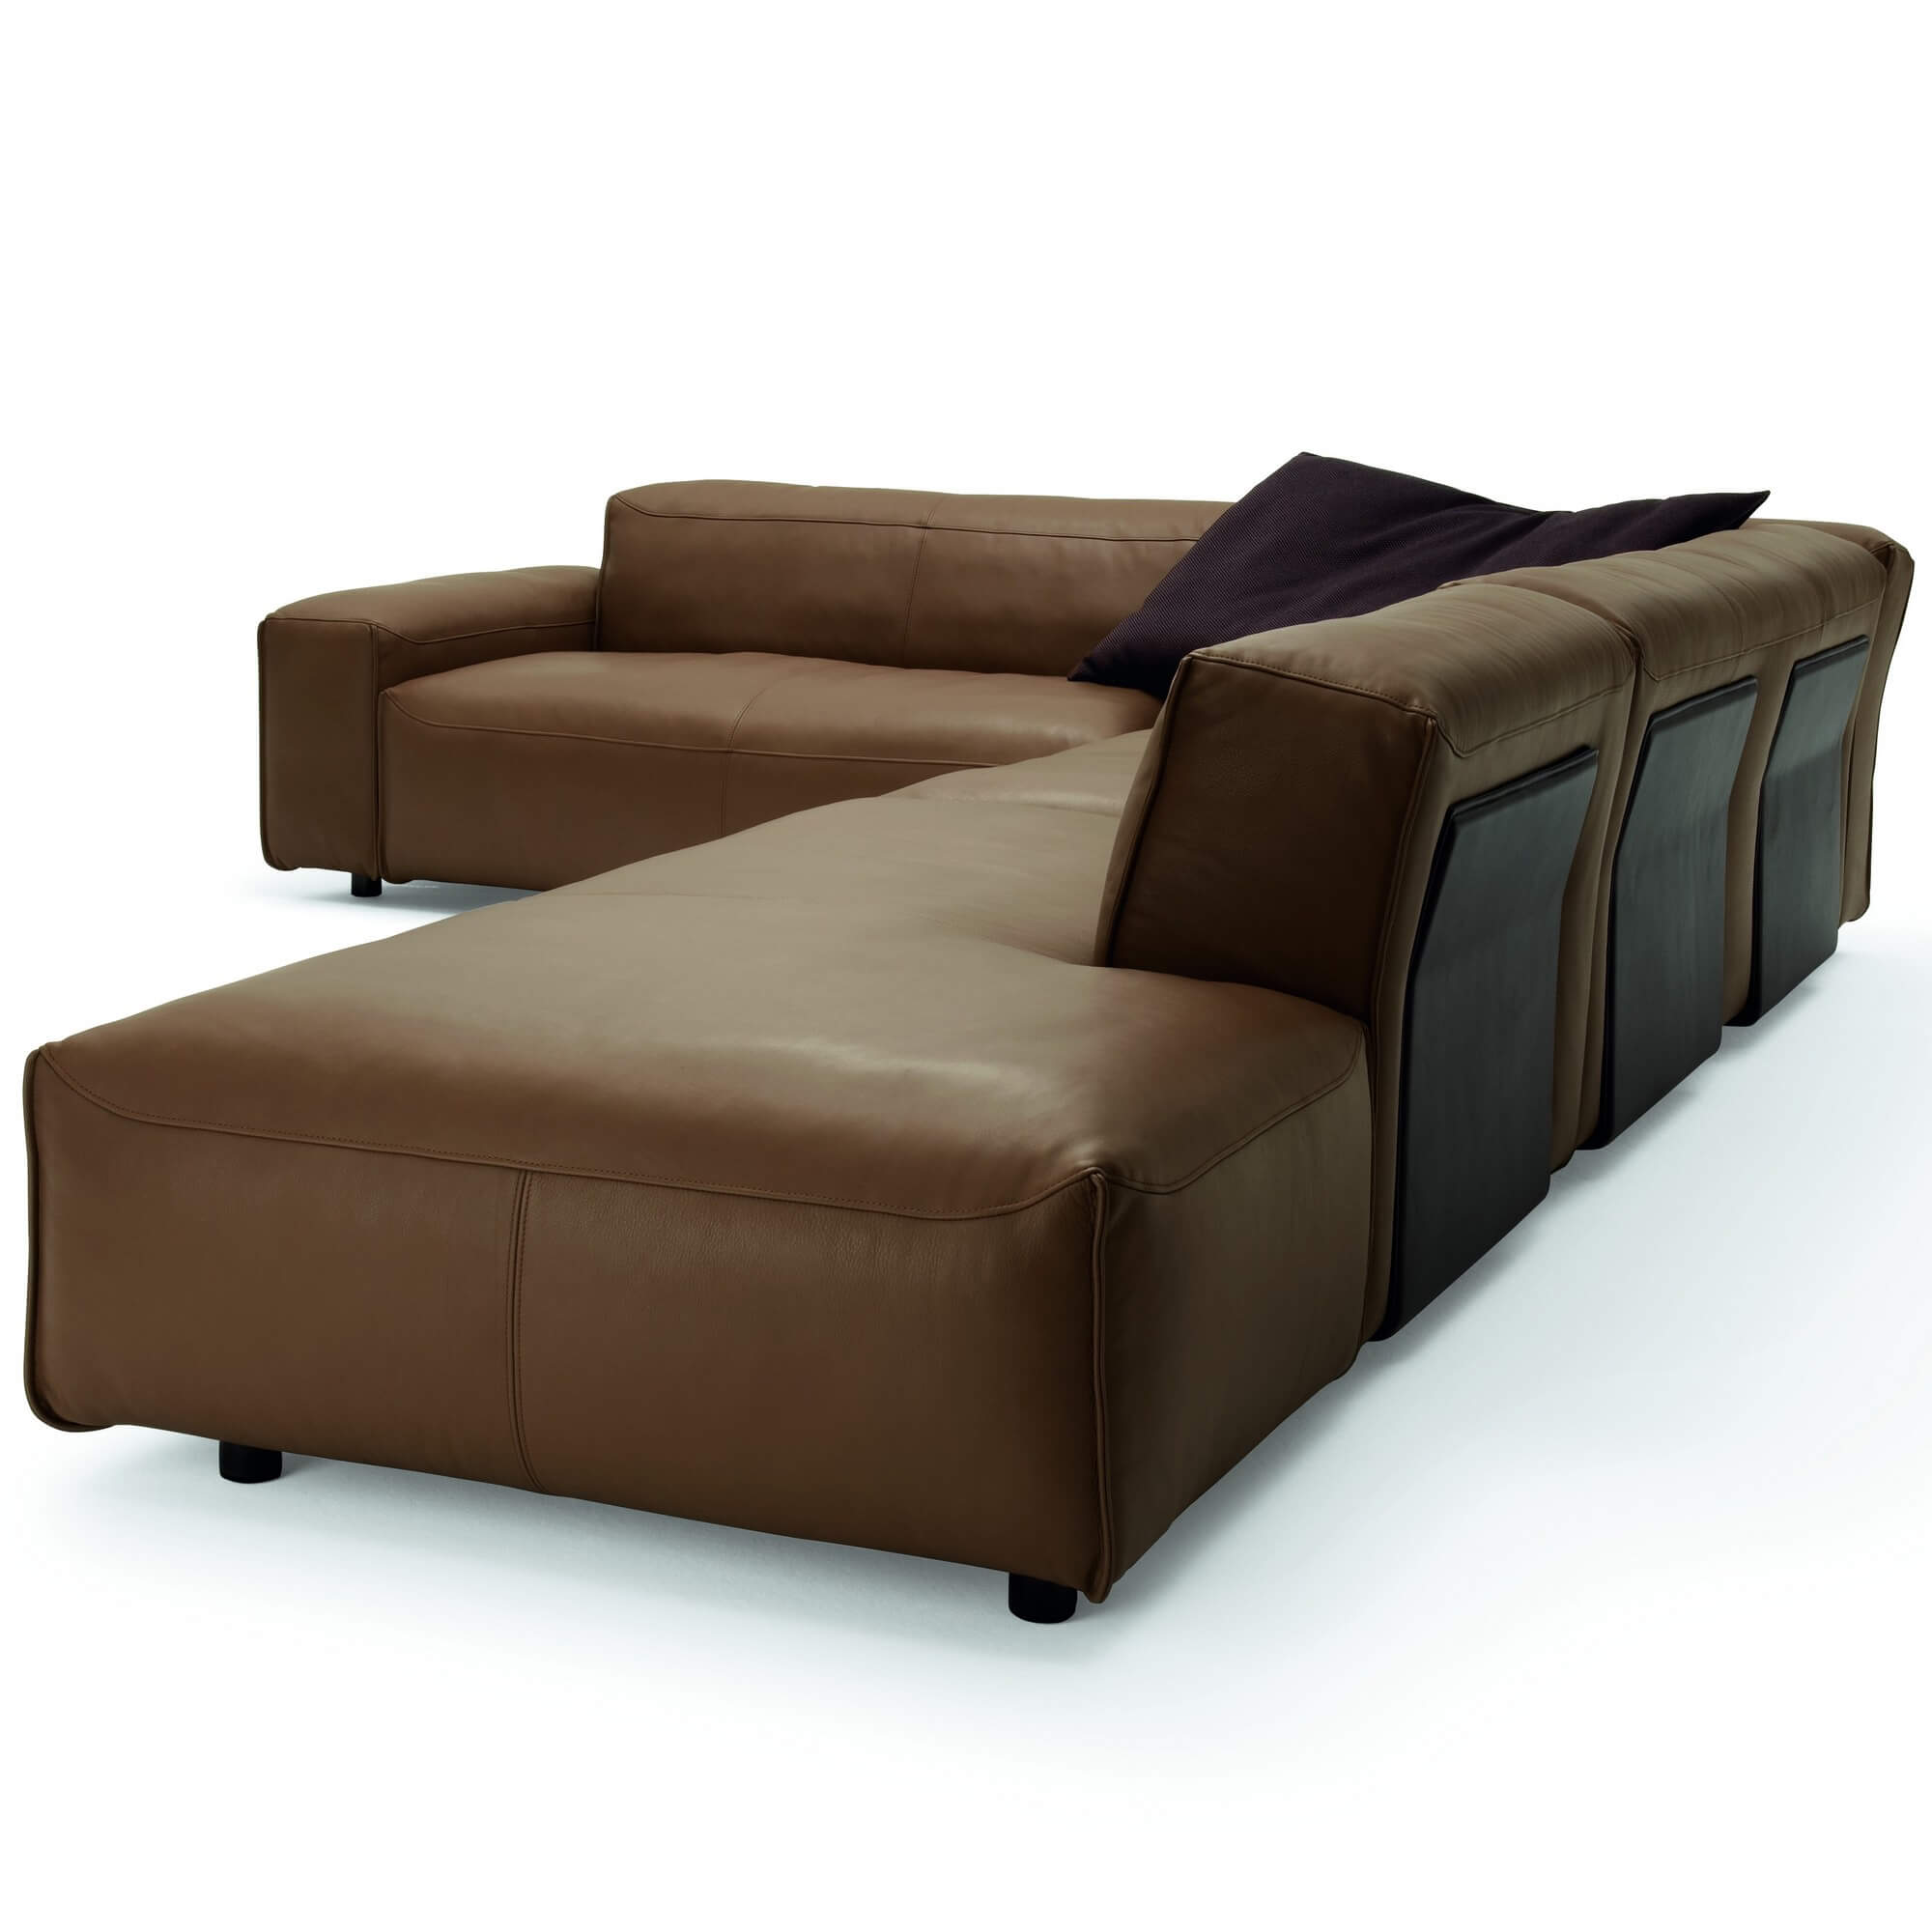 Модульный диван Rolf Benz Mio из Германии